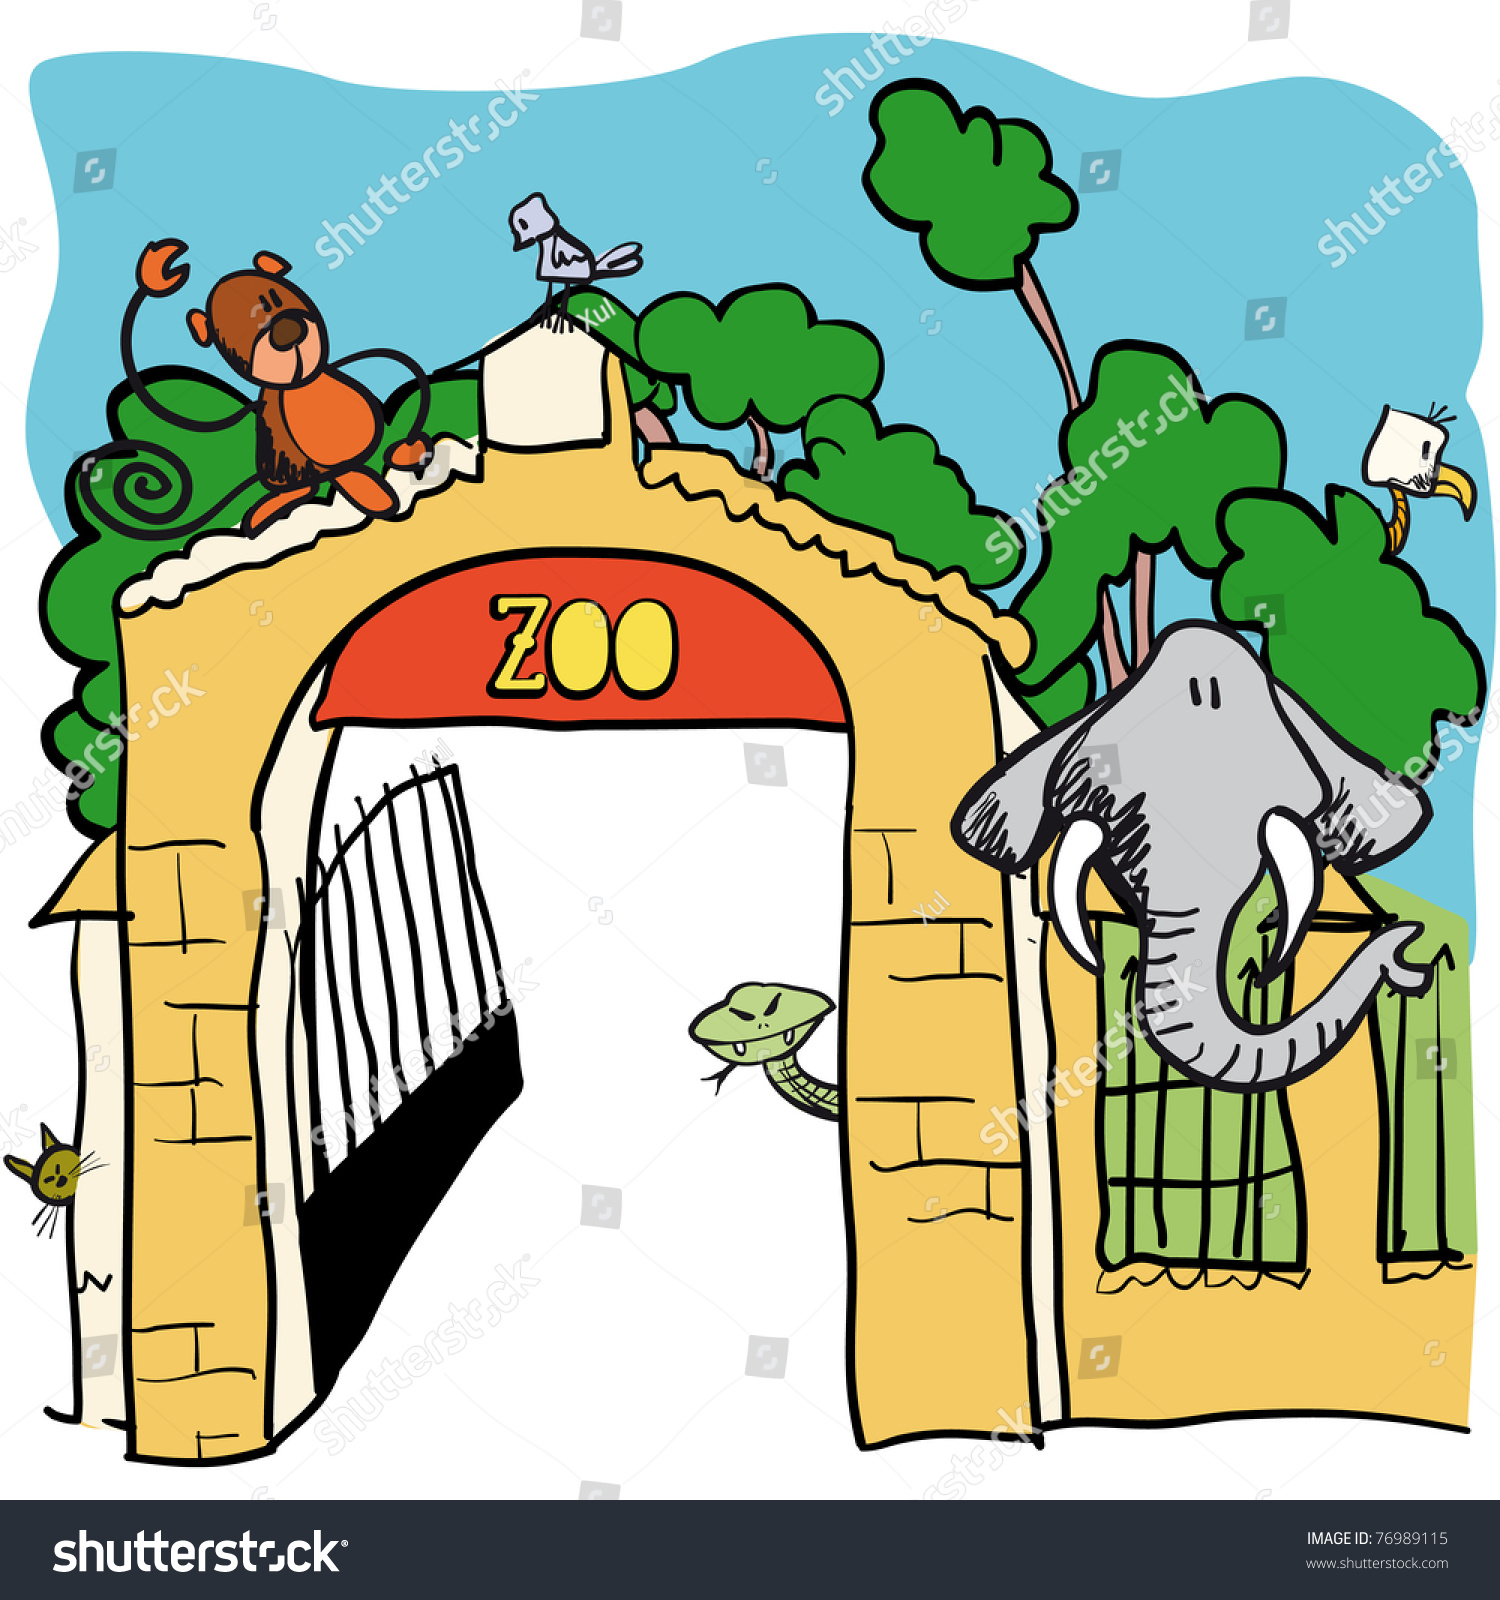 zoo cartoon clipart - photo #40